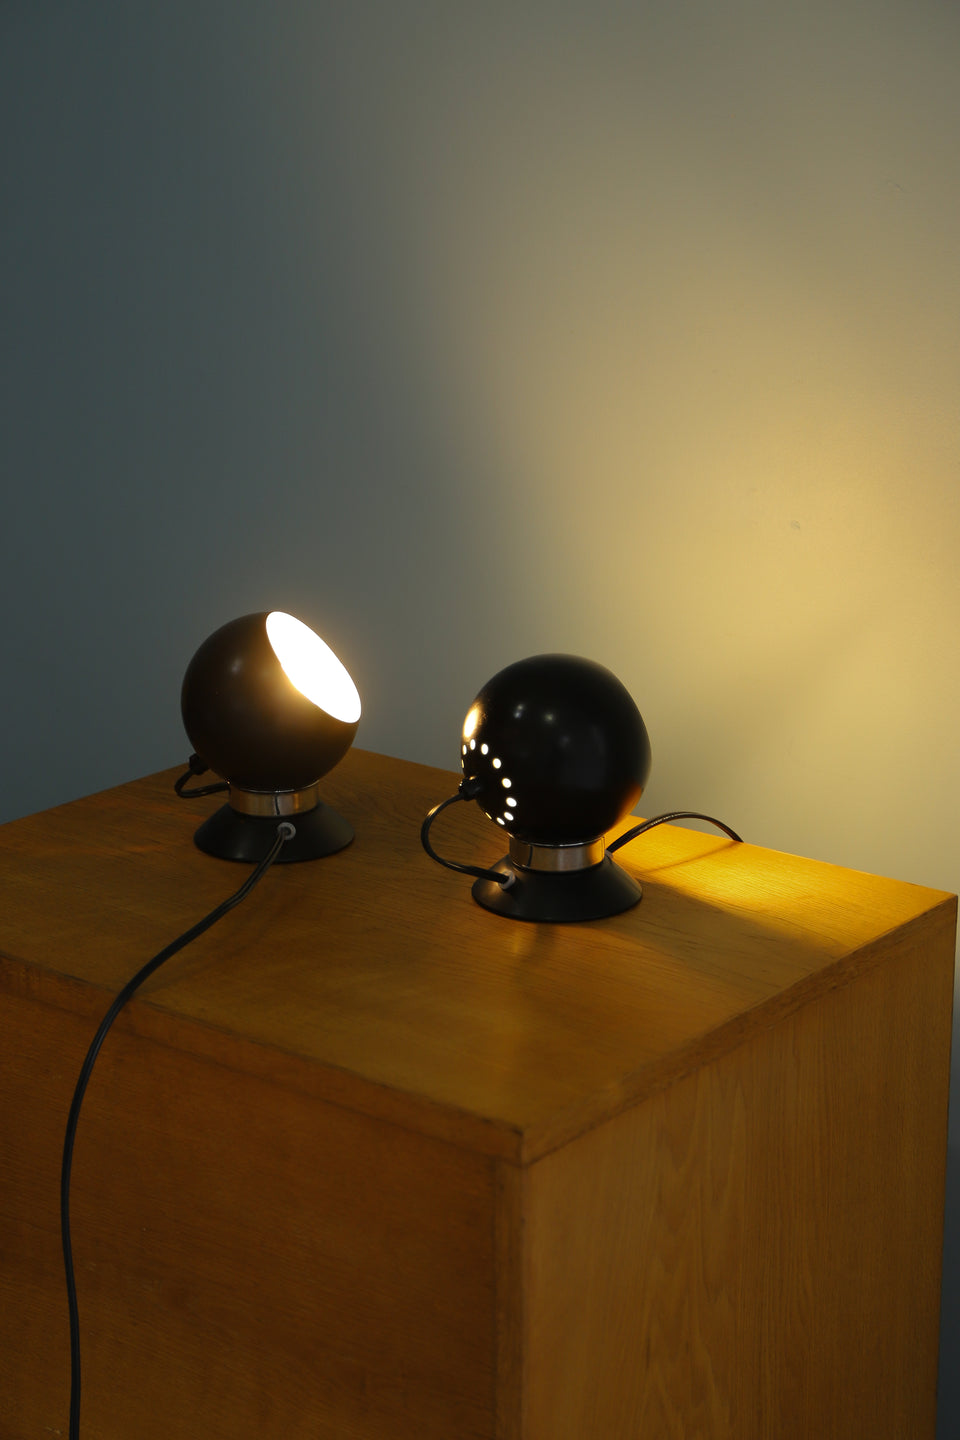 Danish Vintage Abo Randers Magnet Ball Lamp/デンマークヴィンテージ アボランダース ボールランプ ウォールランプ 間接照明 北欧インテリア